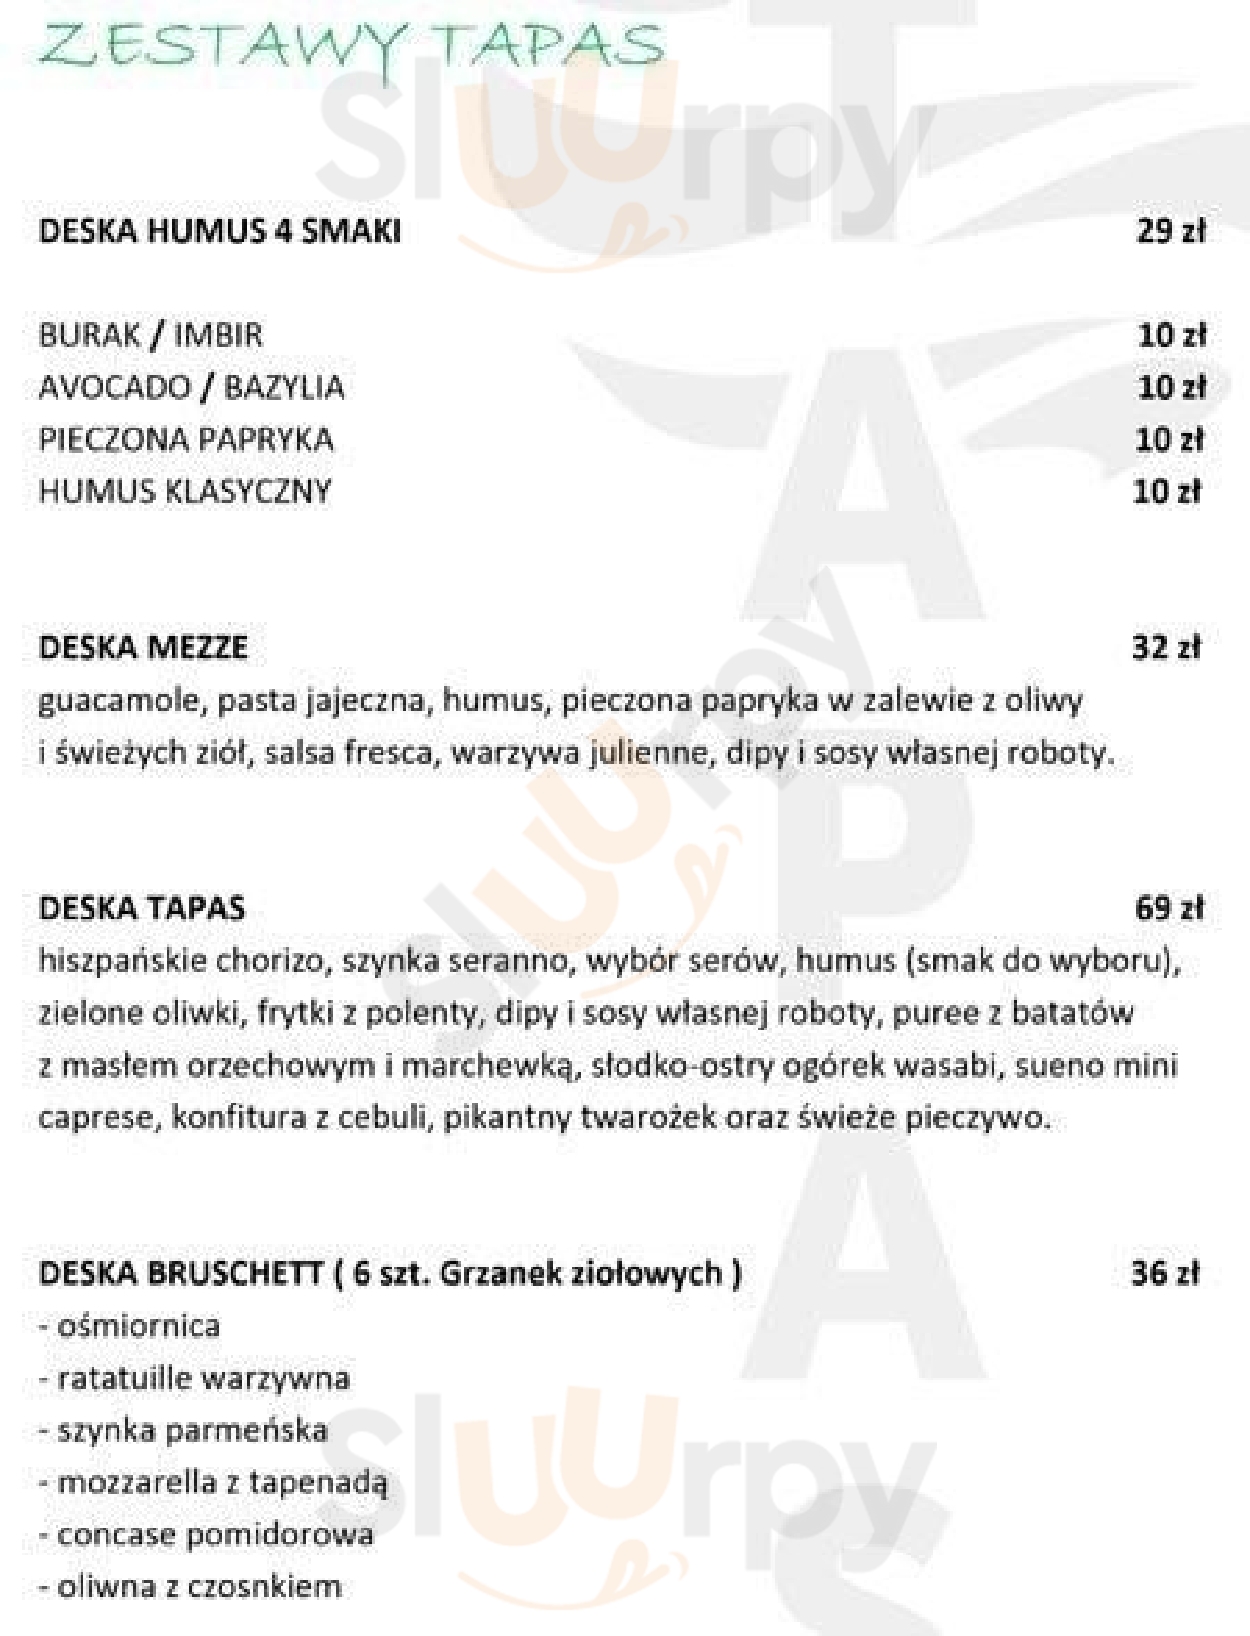 Sueño Tapas & Cocktail Bar Warszawa Menu - 1